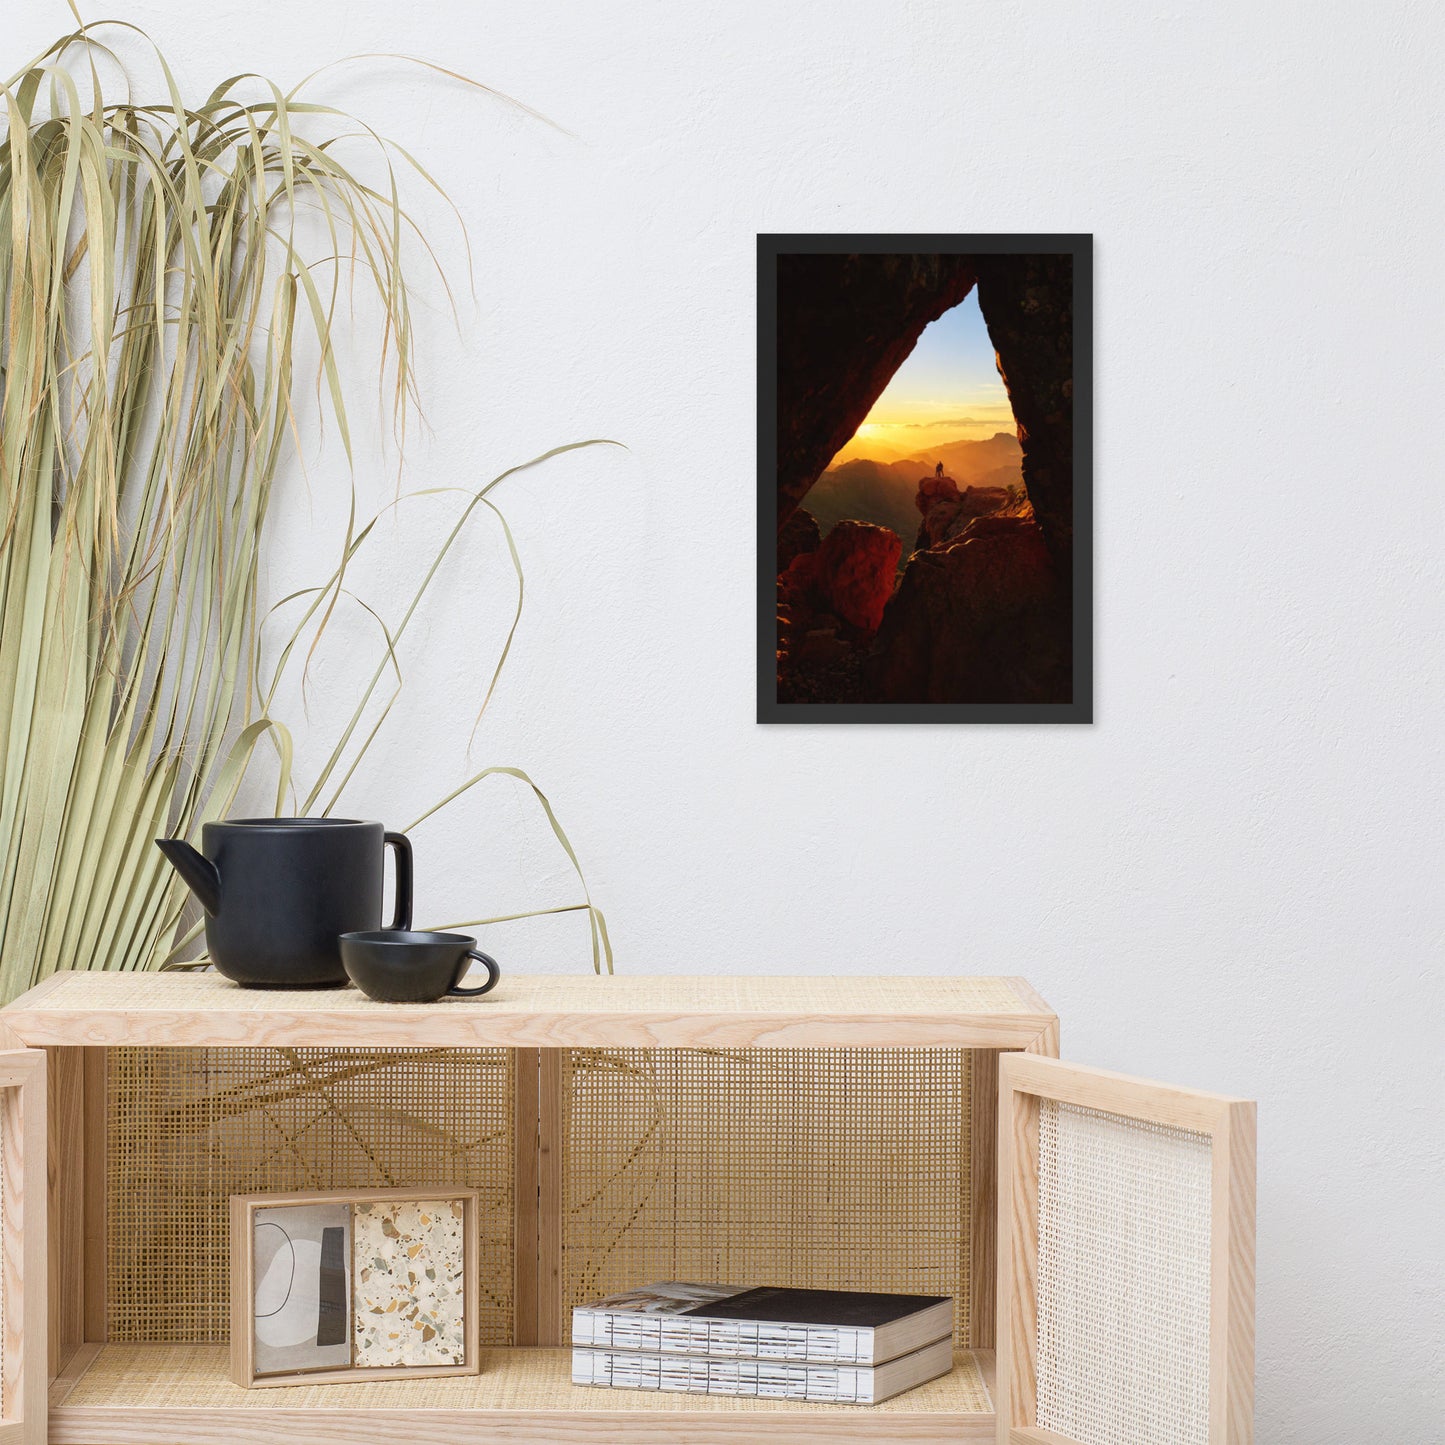 Sunset Mountain Arch Landscape Photograph Framed Wall Art Print